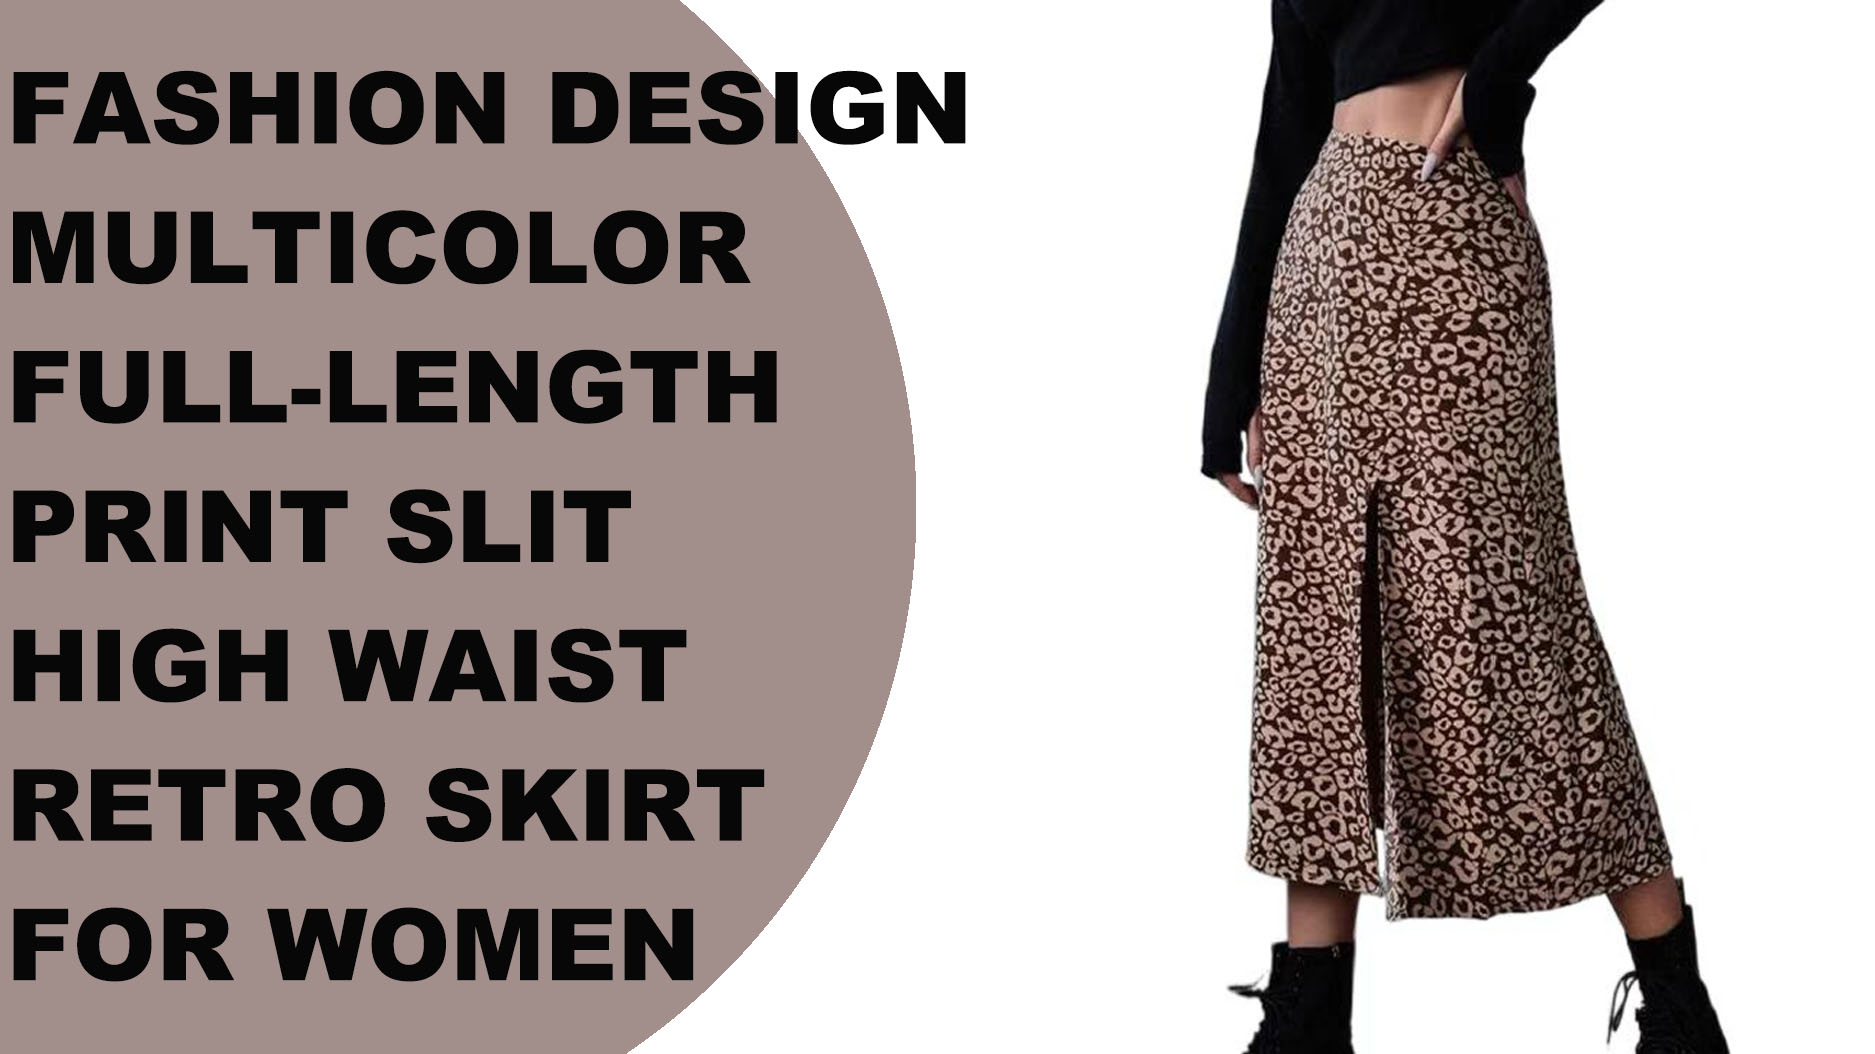 महिलाहरूको लागि फेशन डिजाइन बहुरङ पूर्ण-लम्बाइ प्रिन्ट स्लिट उच्च कम्मर रेट्रो स्कर्ट